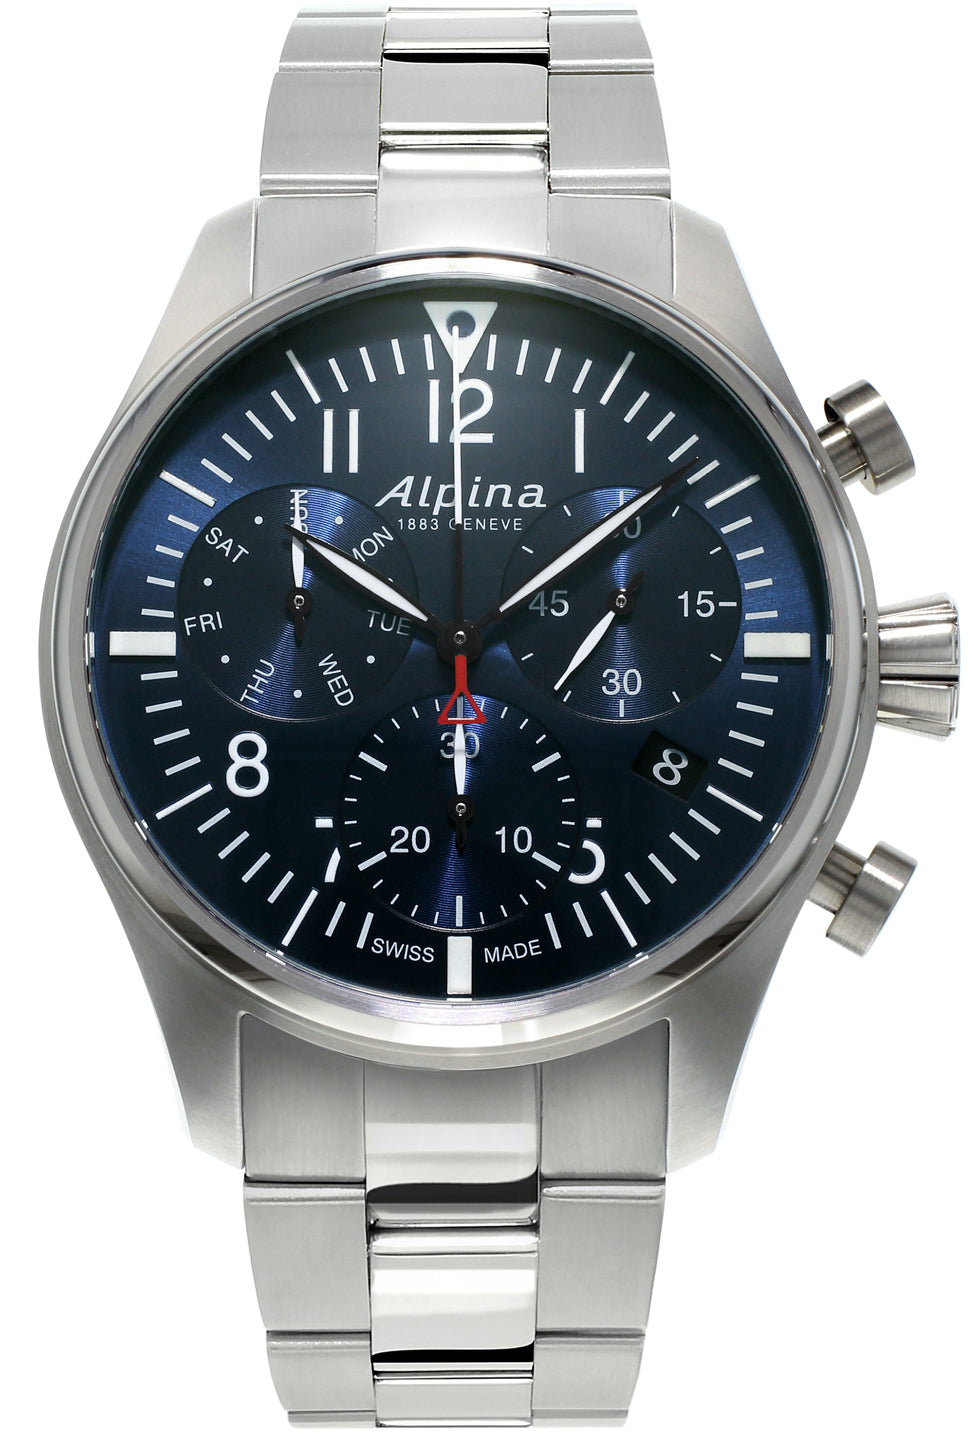 Photos - Wrist Watch Alpina Watch Startimer Pilot Chronograph Quartz D ALP-267 